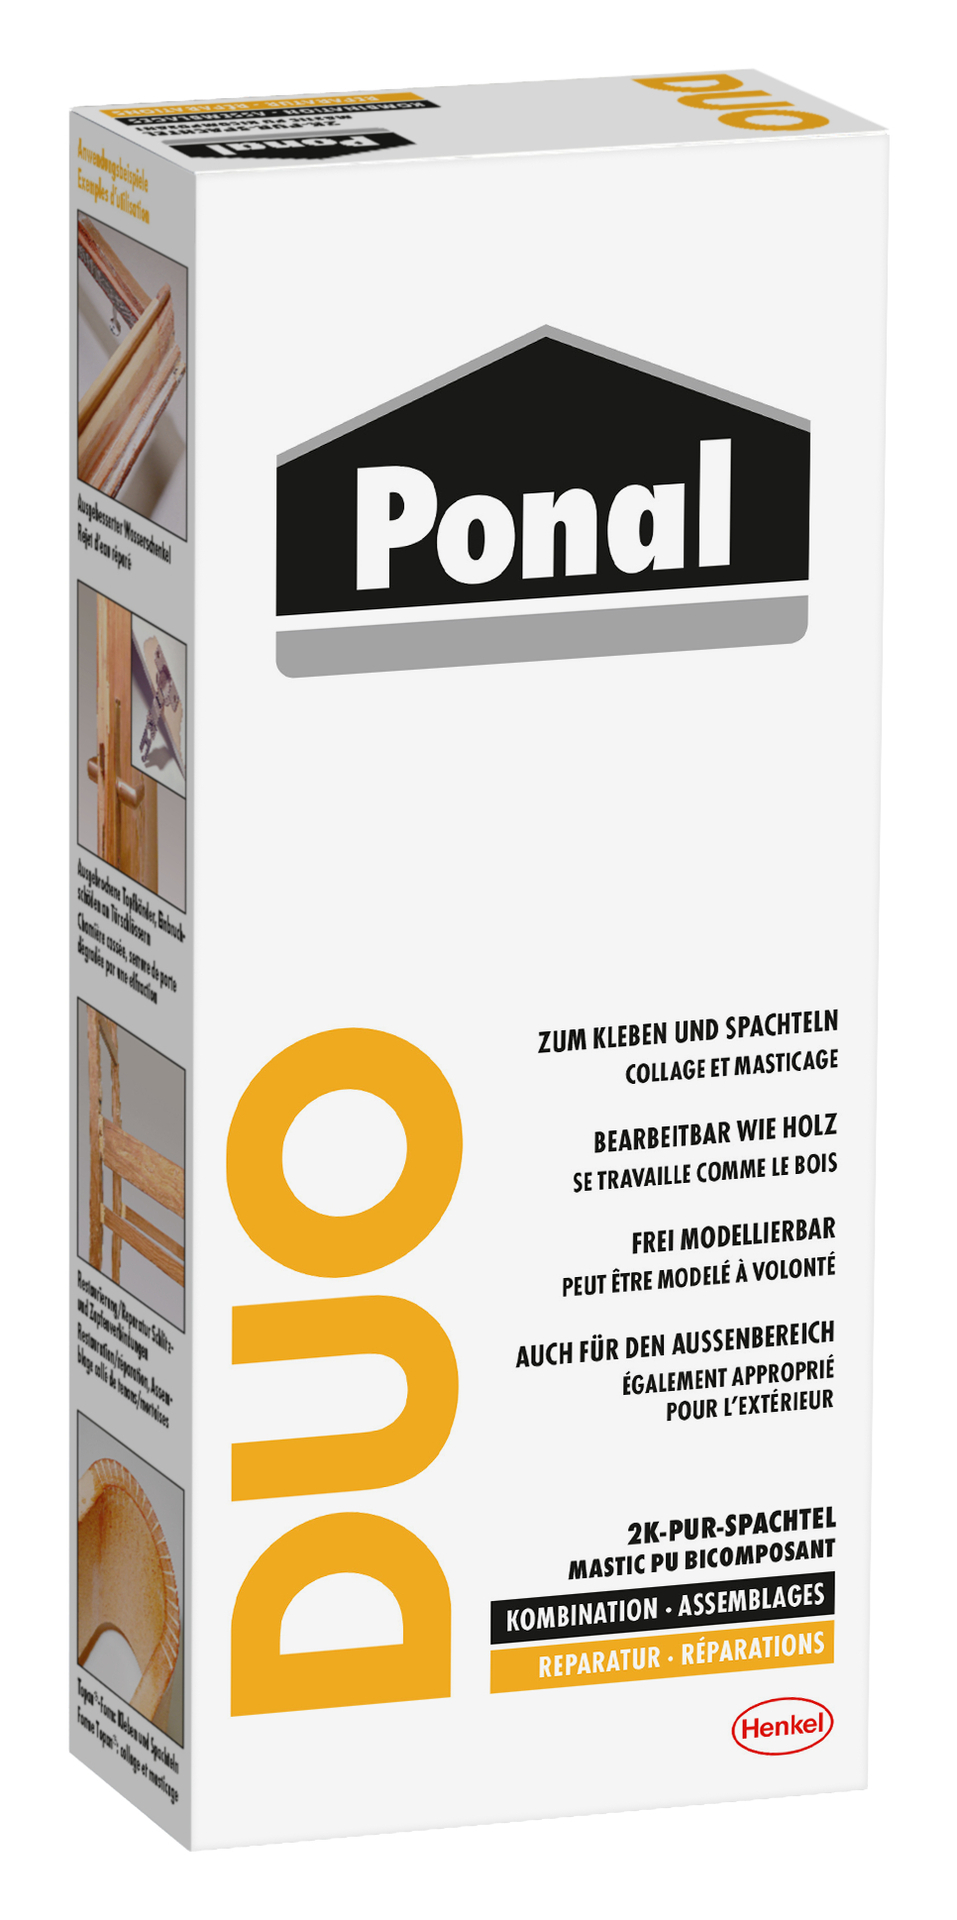 Ponal Duo 2-K Multi- Spachtel 315g